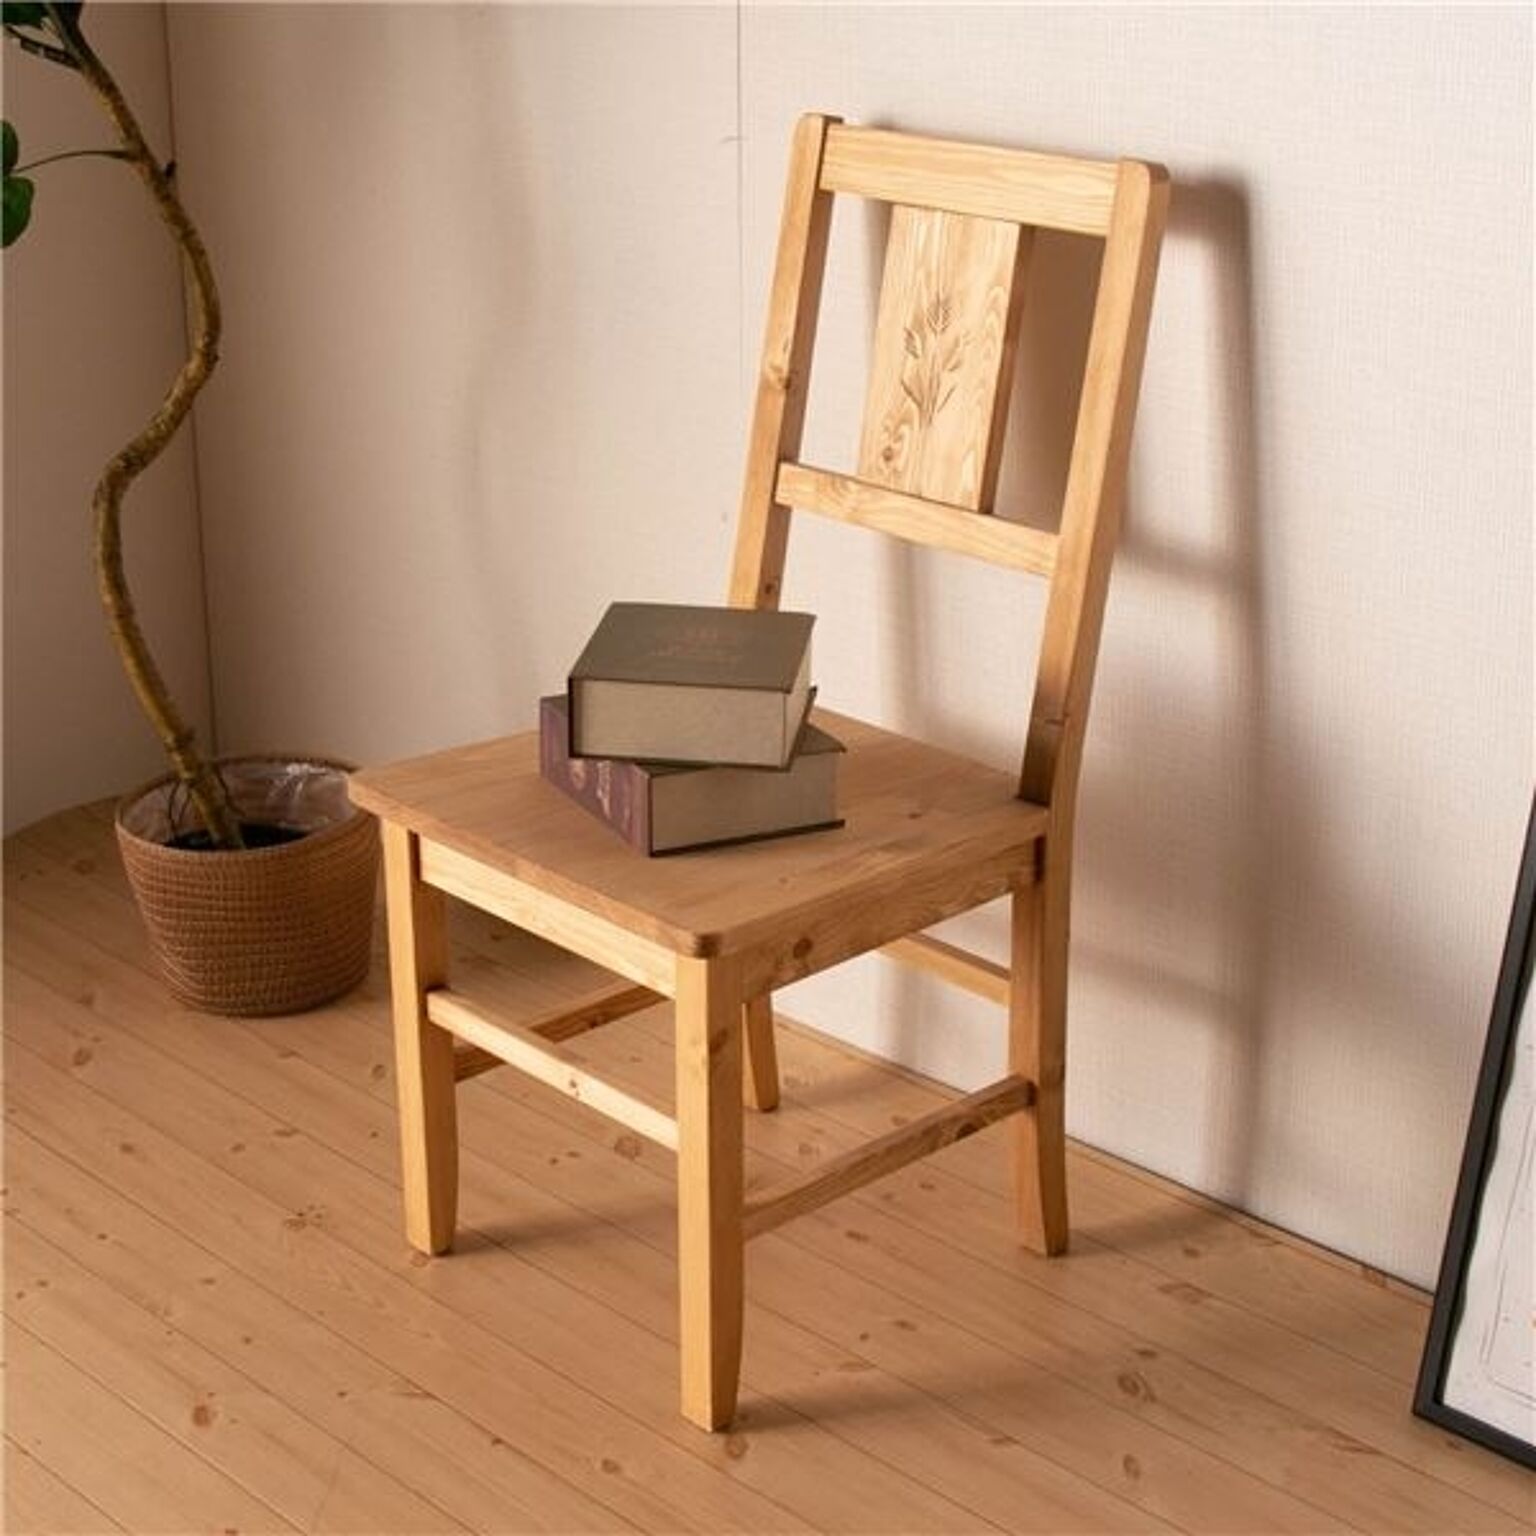 ダイニングチェア 食卓椅子 44×50.6×90cm ナチュラルブラウン 木製 パイン材 完成品 リビング ダイニング